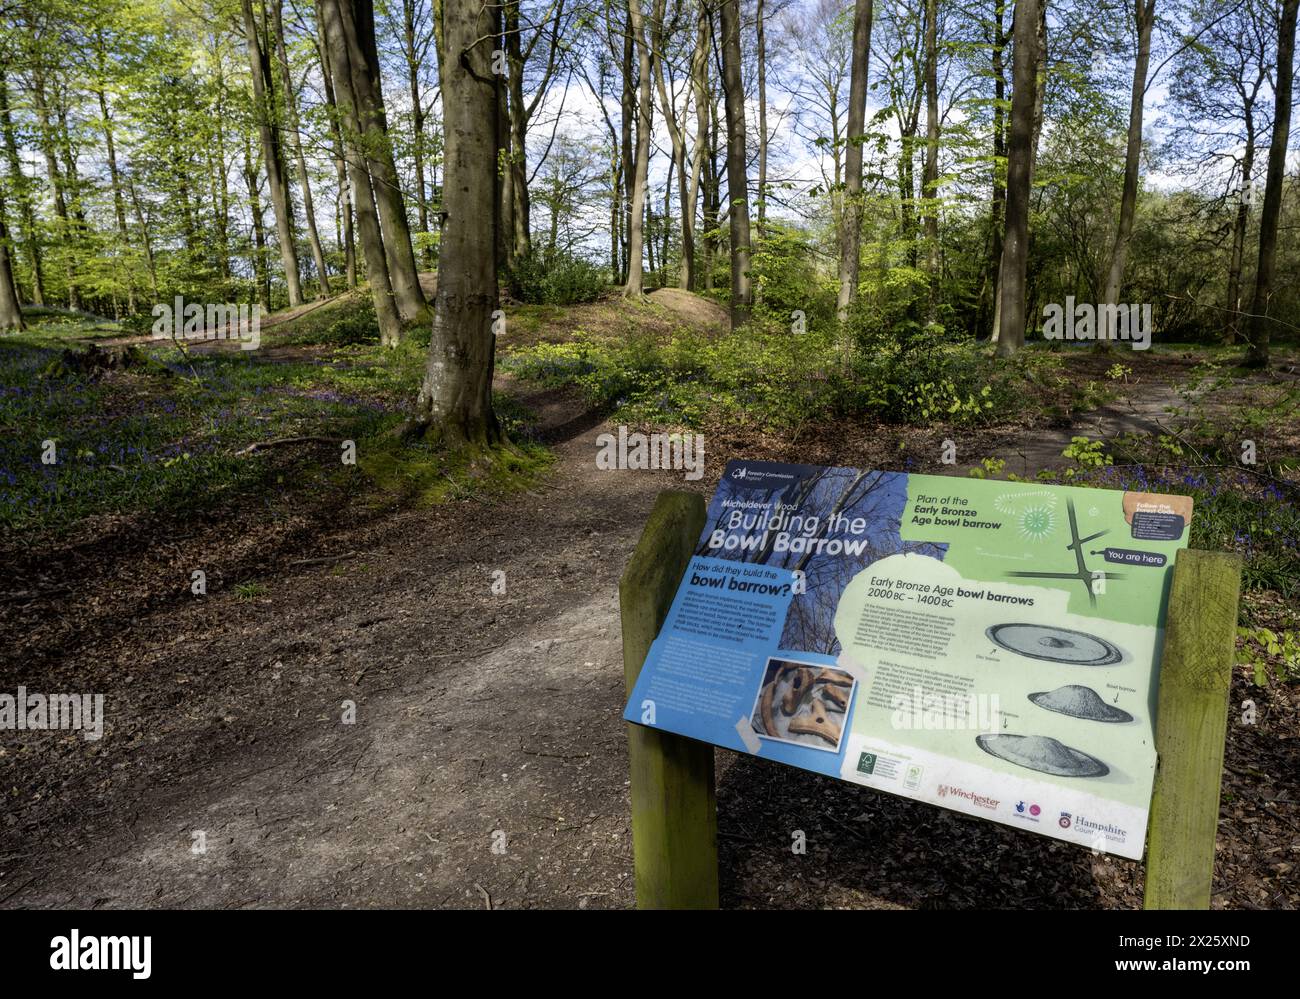 Panneaux et panneaux d'information touristique et touristique à Micheldever Wood, Micheldever, Hampshire, Angleterre, Royaume-Uni Banque D'Images